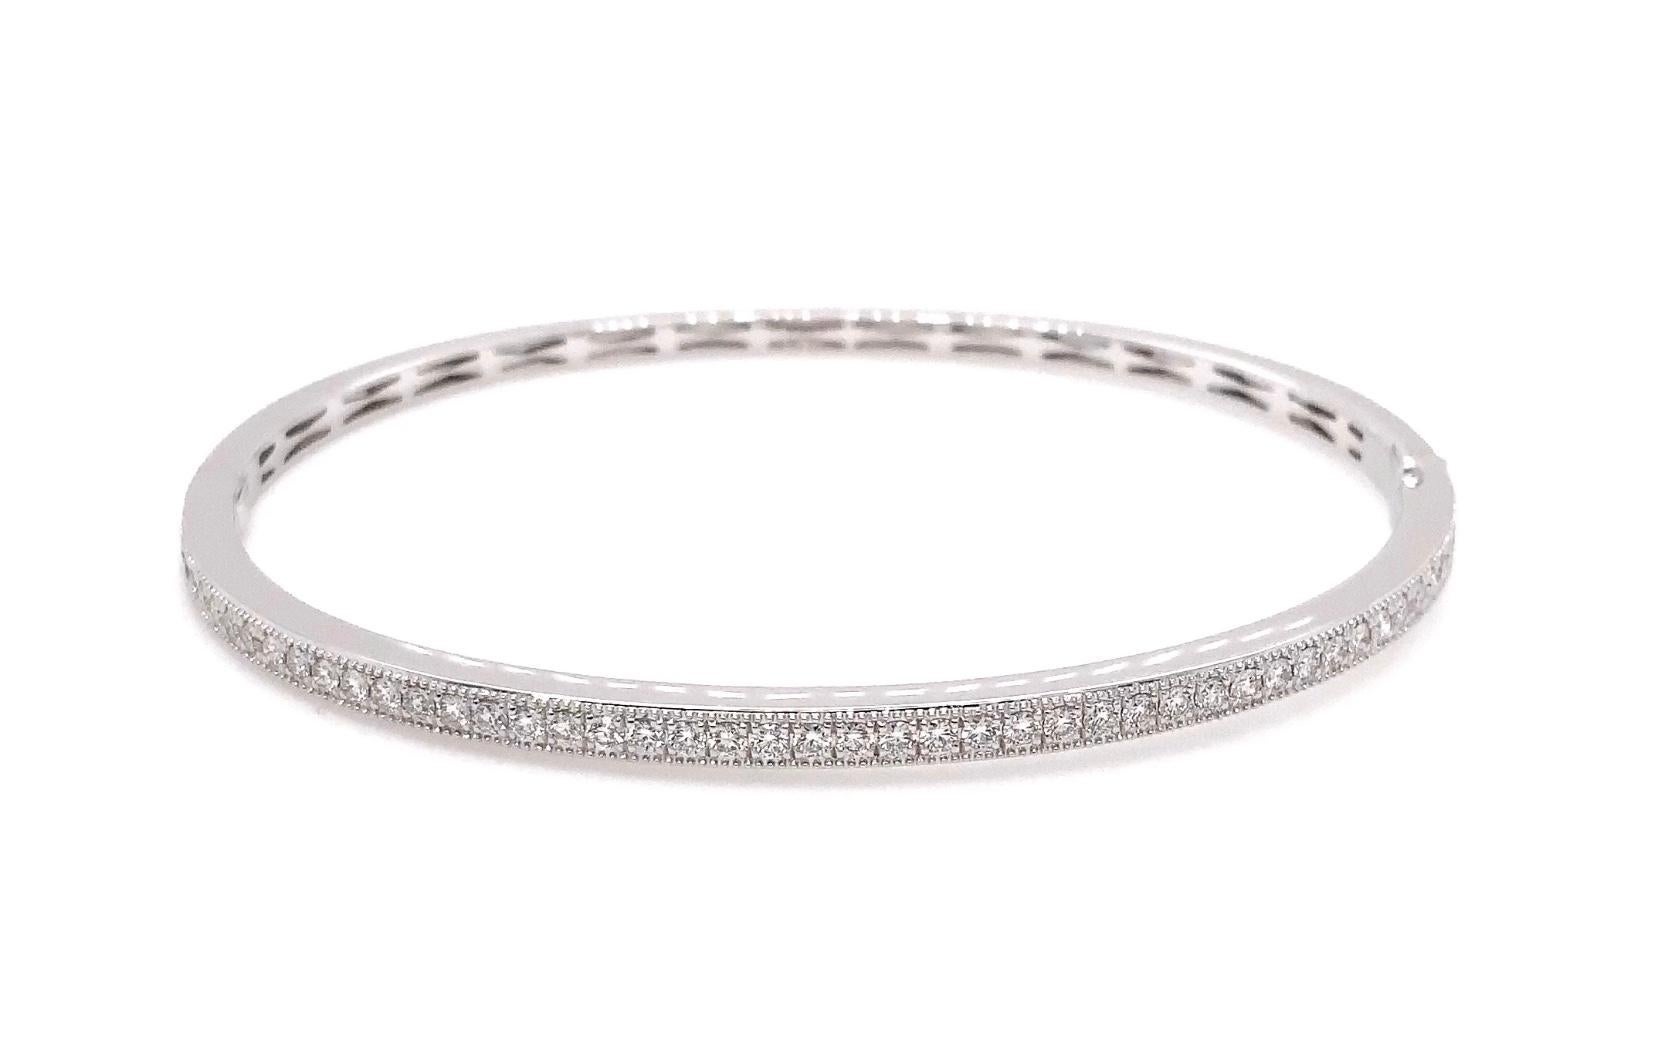 Ce bracelet à charnière Memoire Milgrain est réalisé en or blanc 18 carats et est orné de 46 diamants ronds de taille brillant totalisant 0,76 carats. D'une largeur de 3 millimètres et d'un diamètre de poignet de 2,5 pouces, ce bracelet pèse 10,6